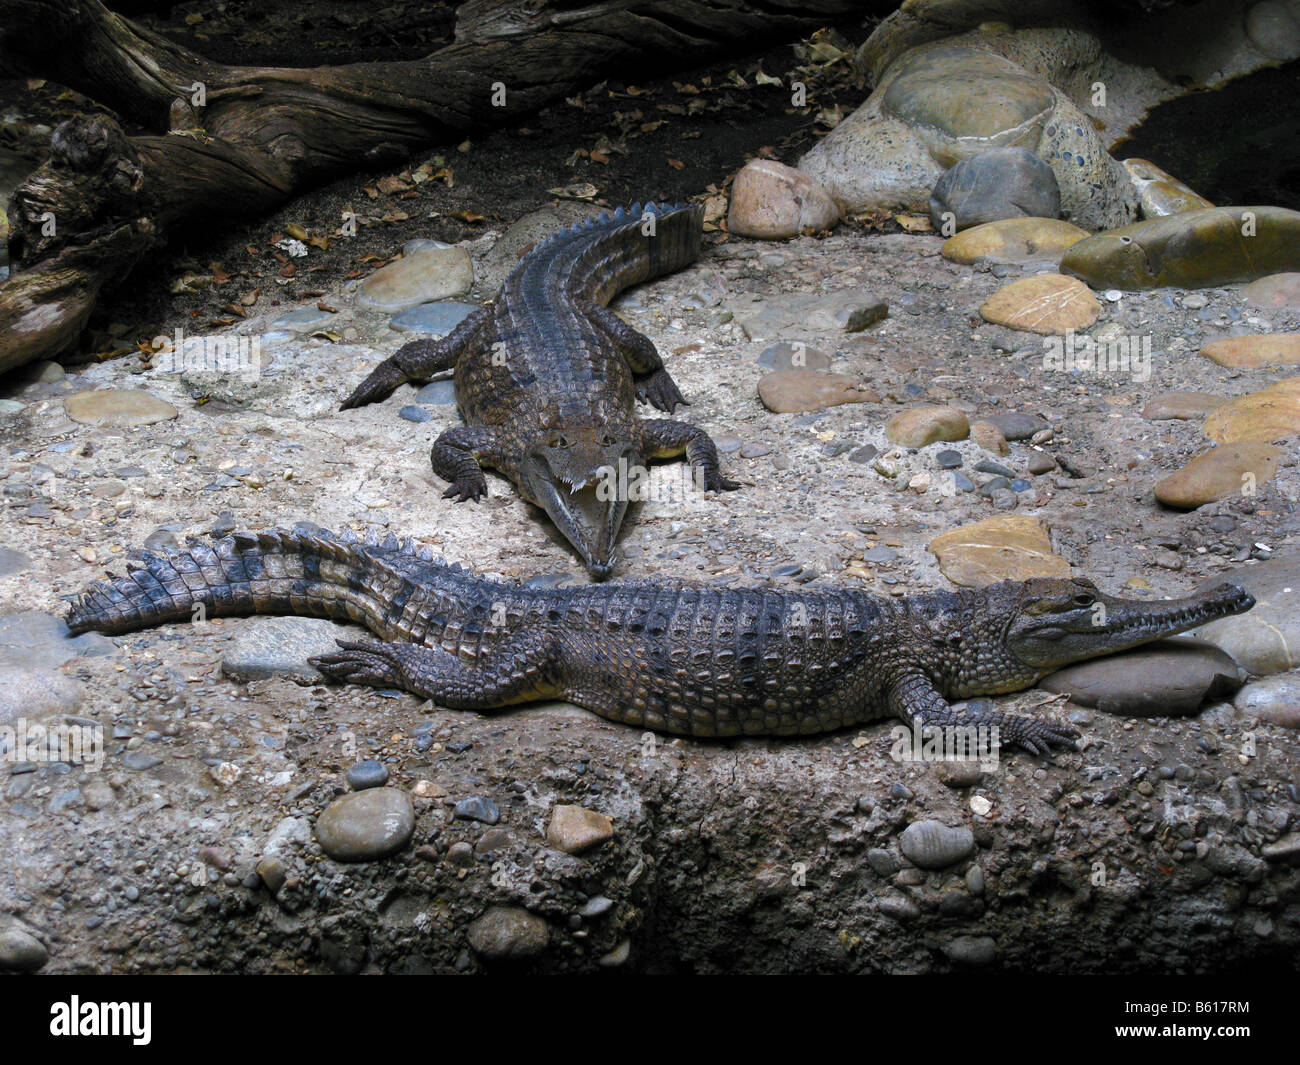 Australian coccodrillo di acqua dolce (Crocodylus johnsoni), chiamato anche Freshie, in un zoo in Europa. Foto Stock